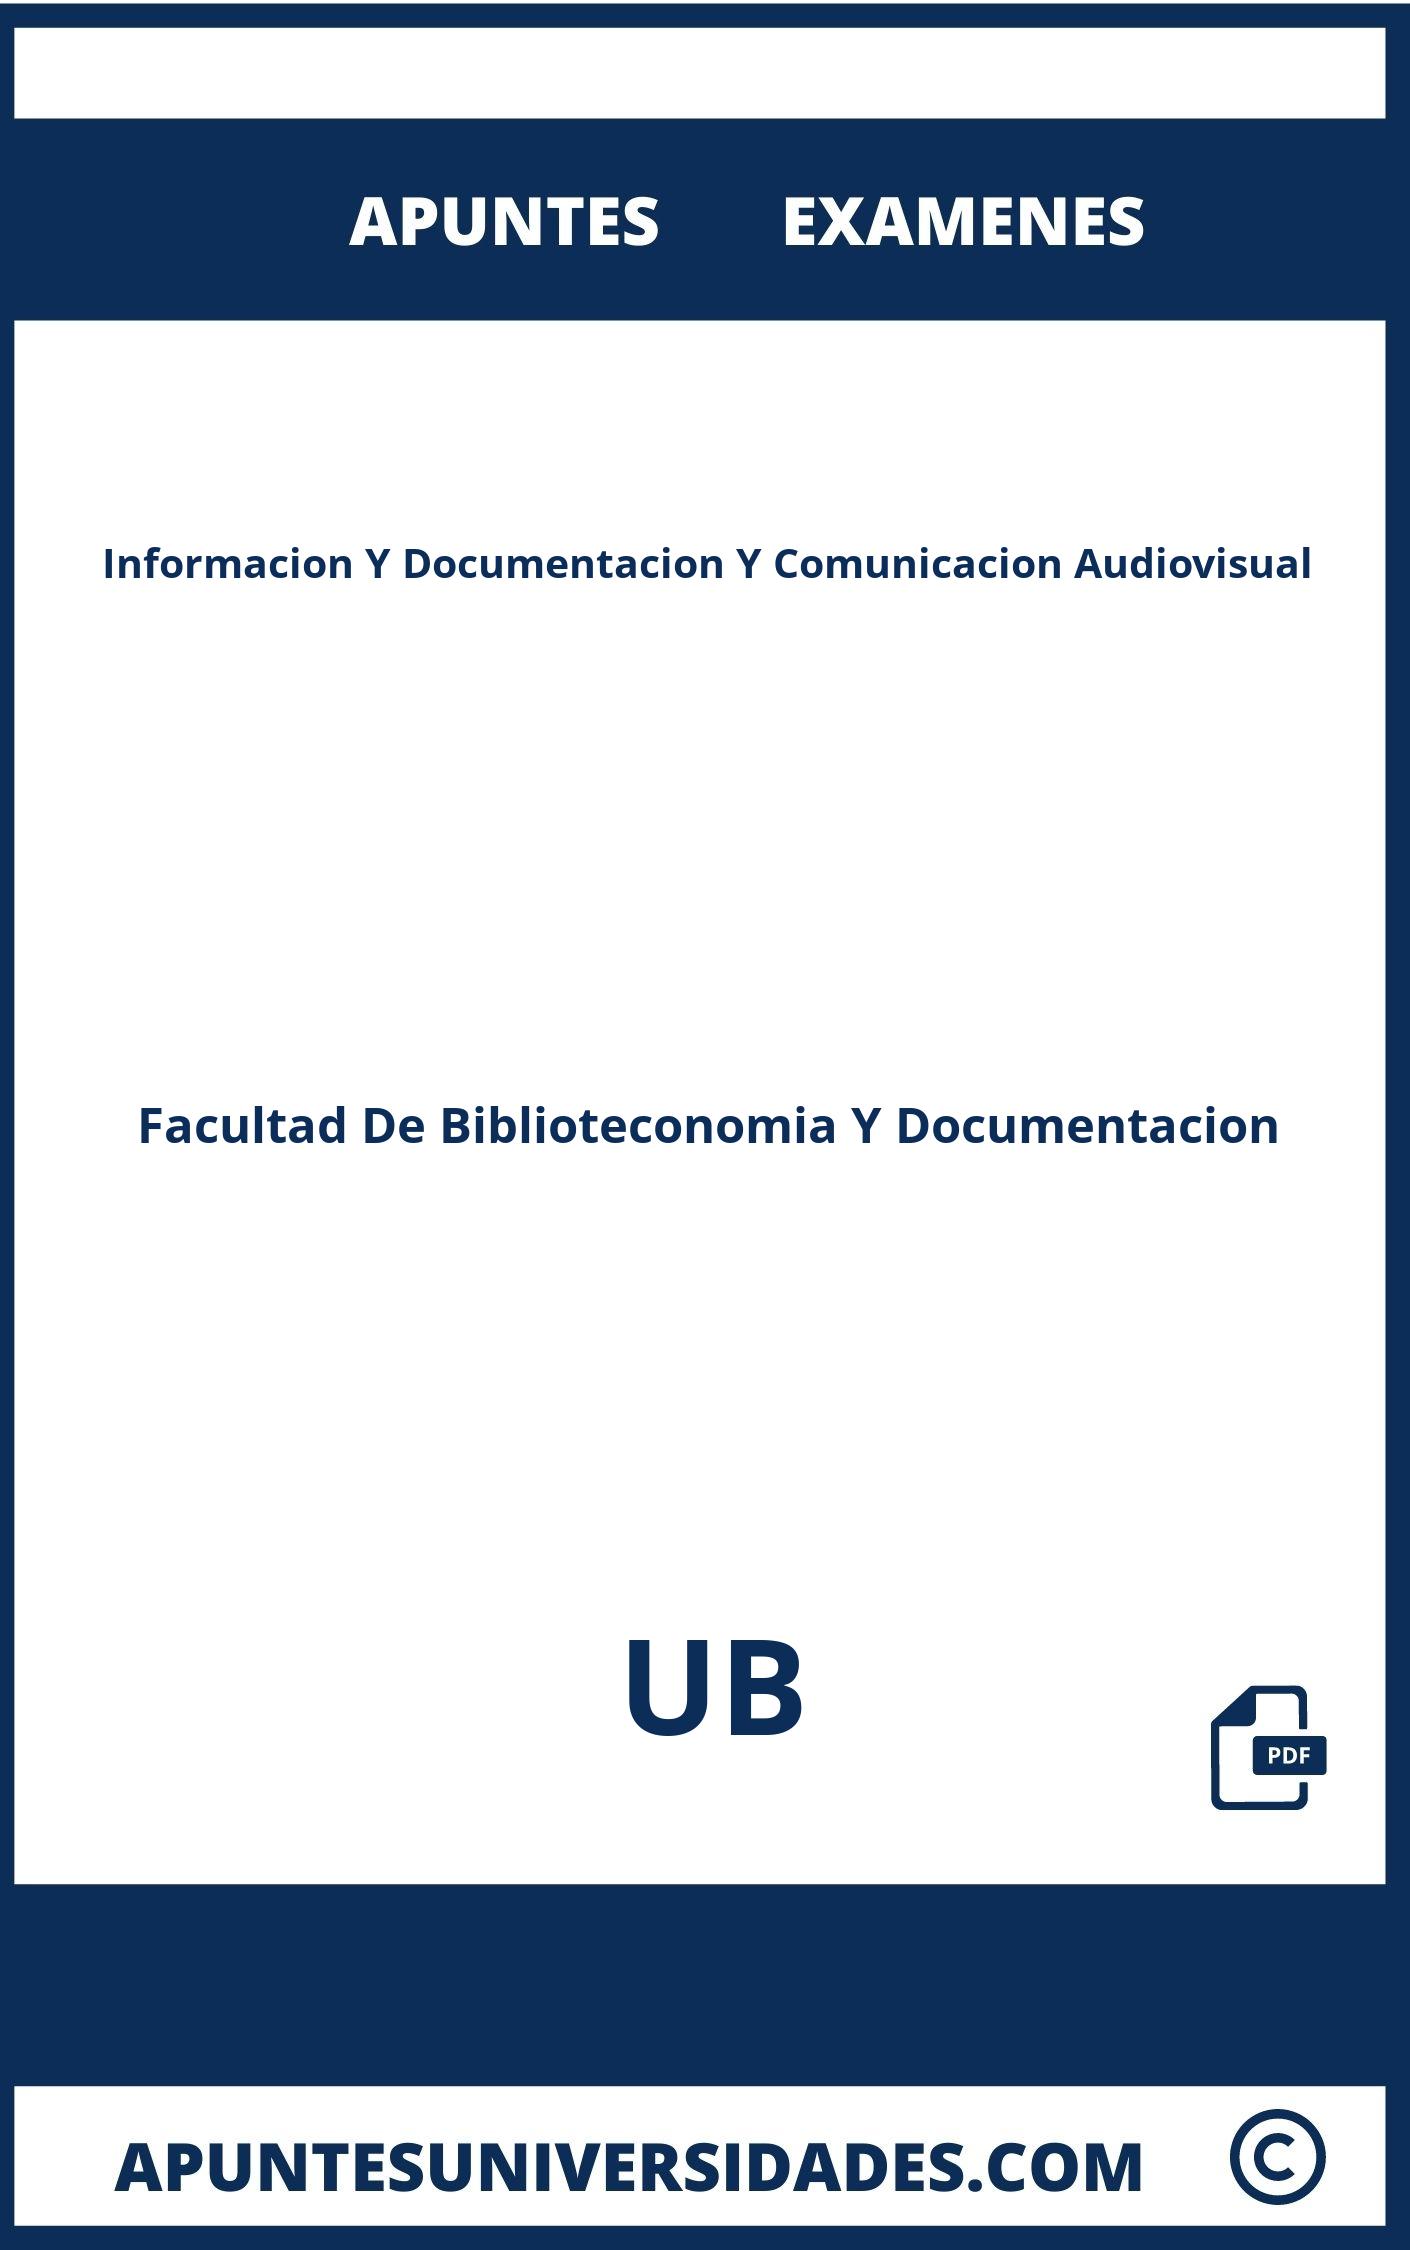 Informacion Y Documentacion Y Comunicacion Audiovisual UB Examenes Apuntes